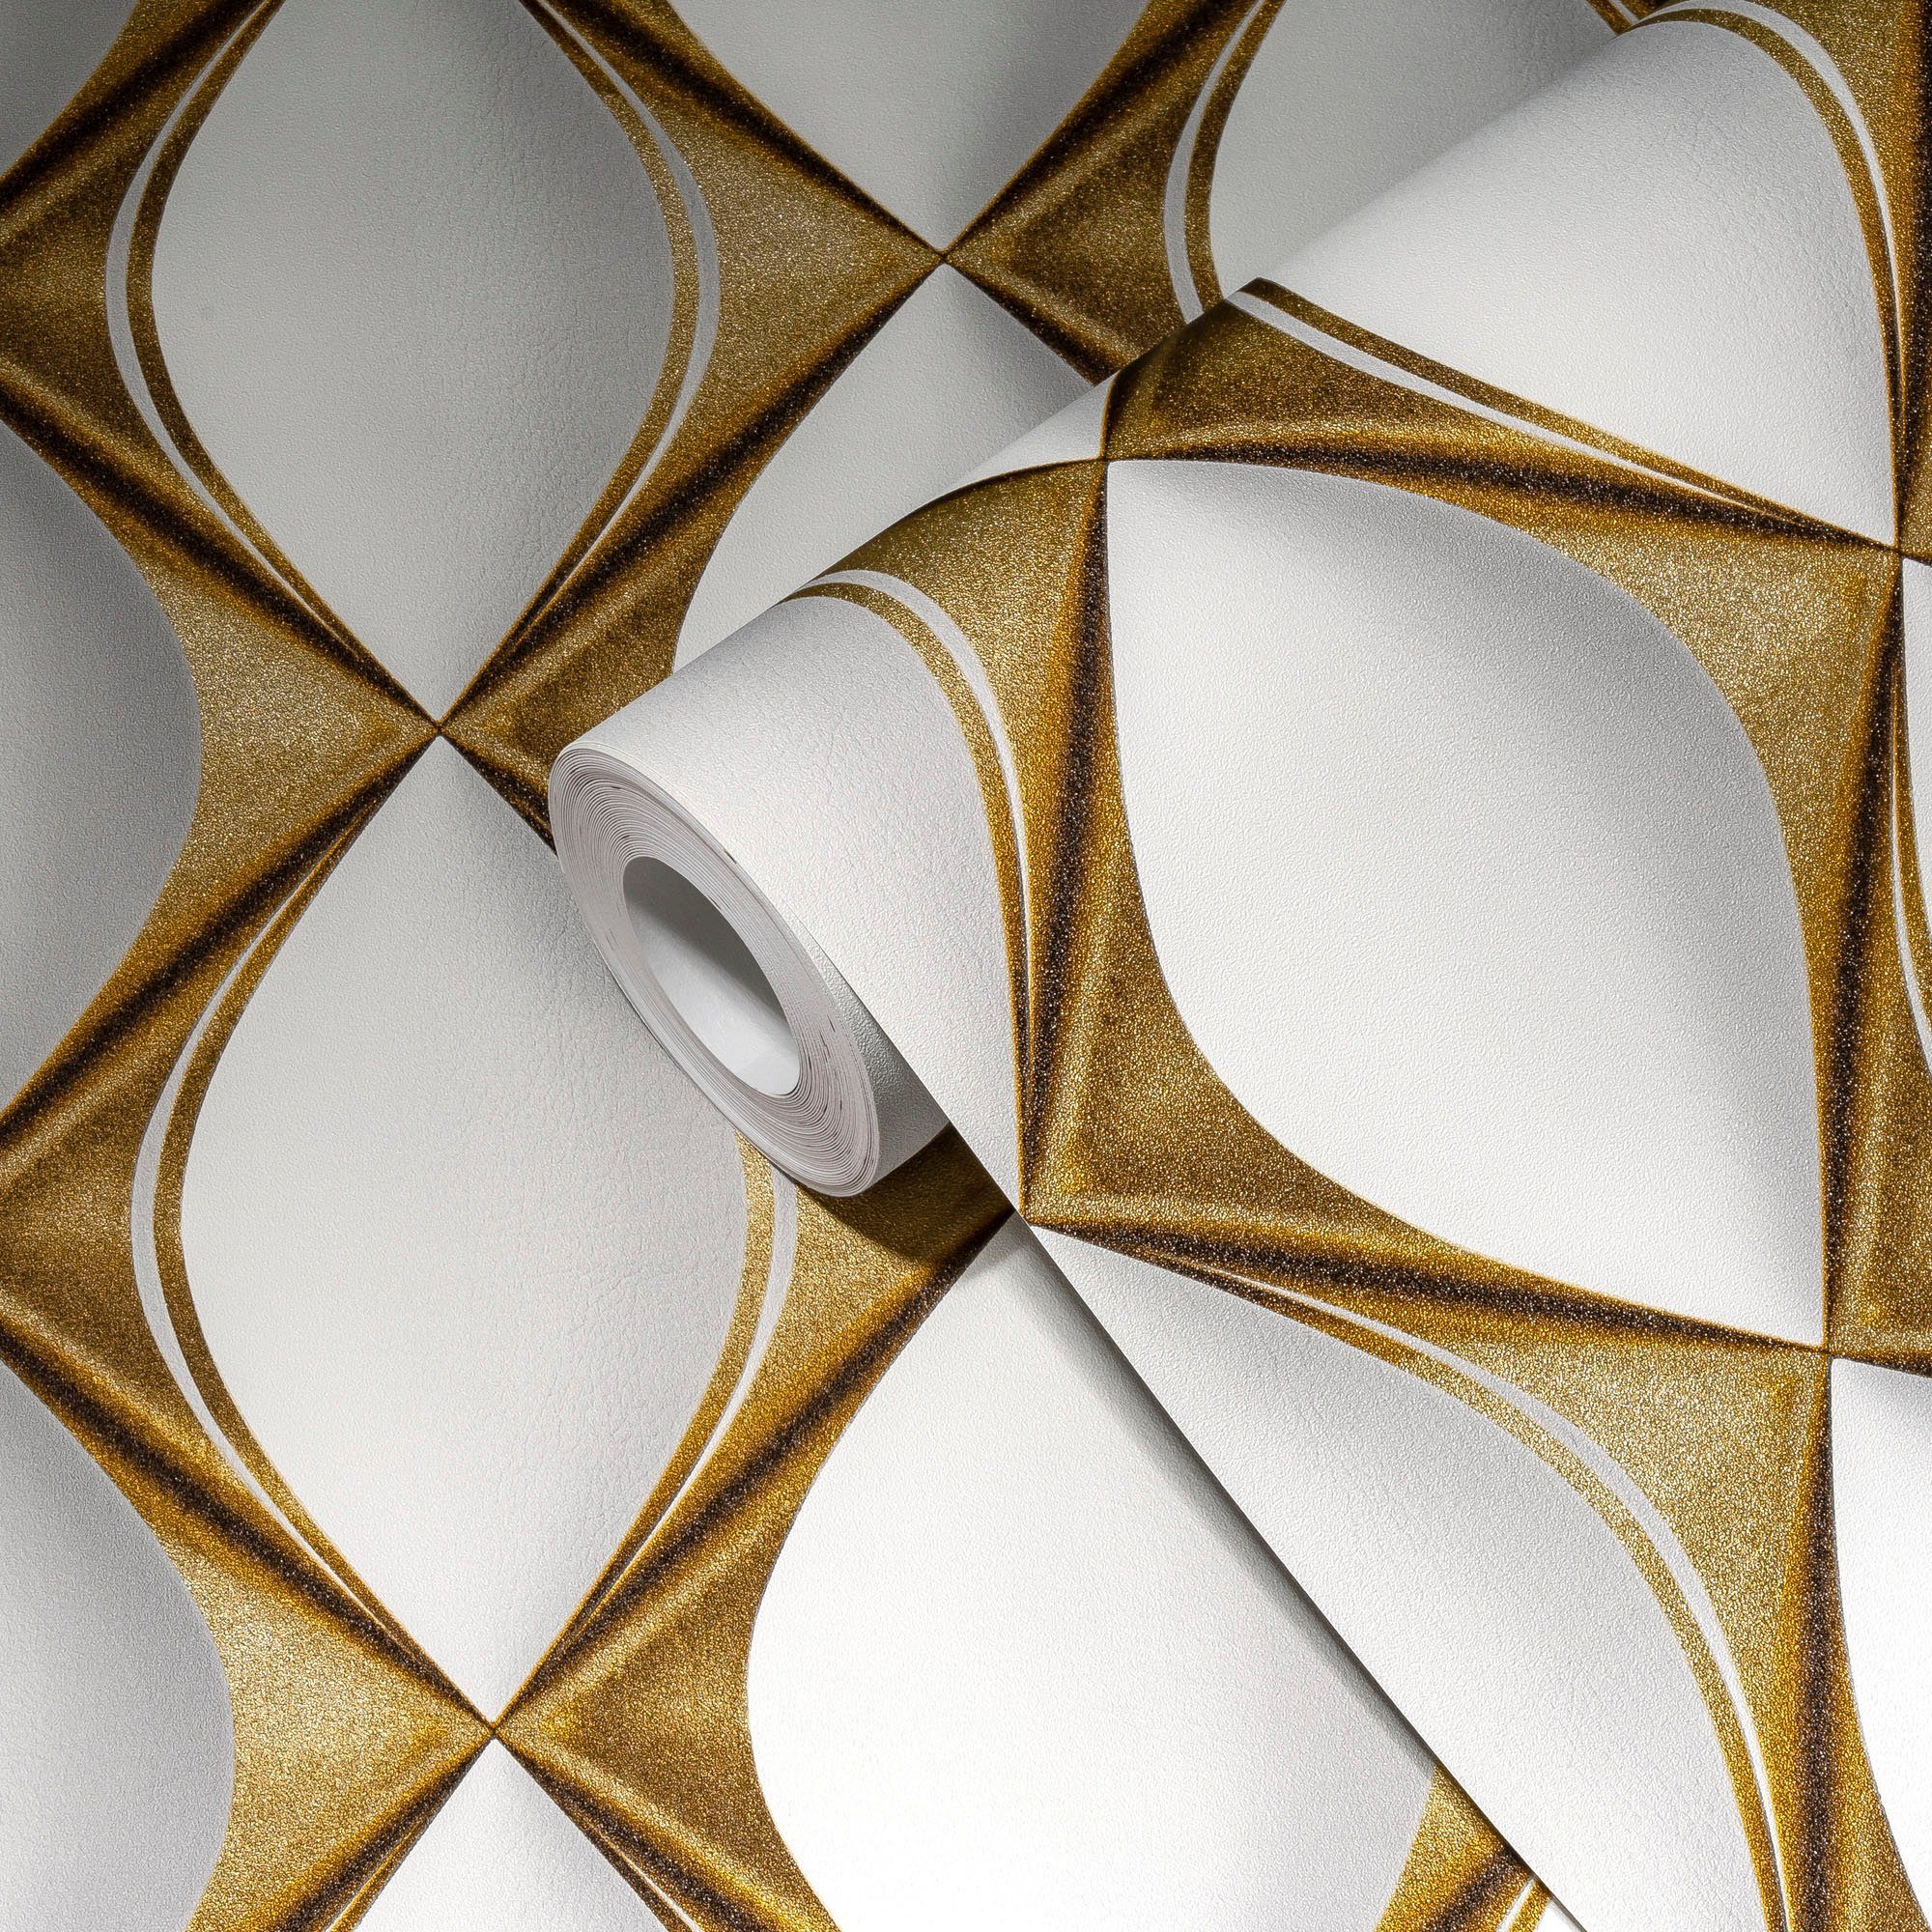 living walls Vliestapete Design Spa, My strukturiert, gold/weiß metallic, 3D-Optik, Effekt My 3D Home Tapete